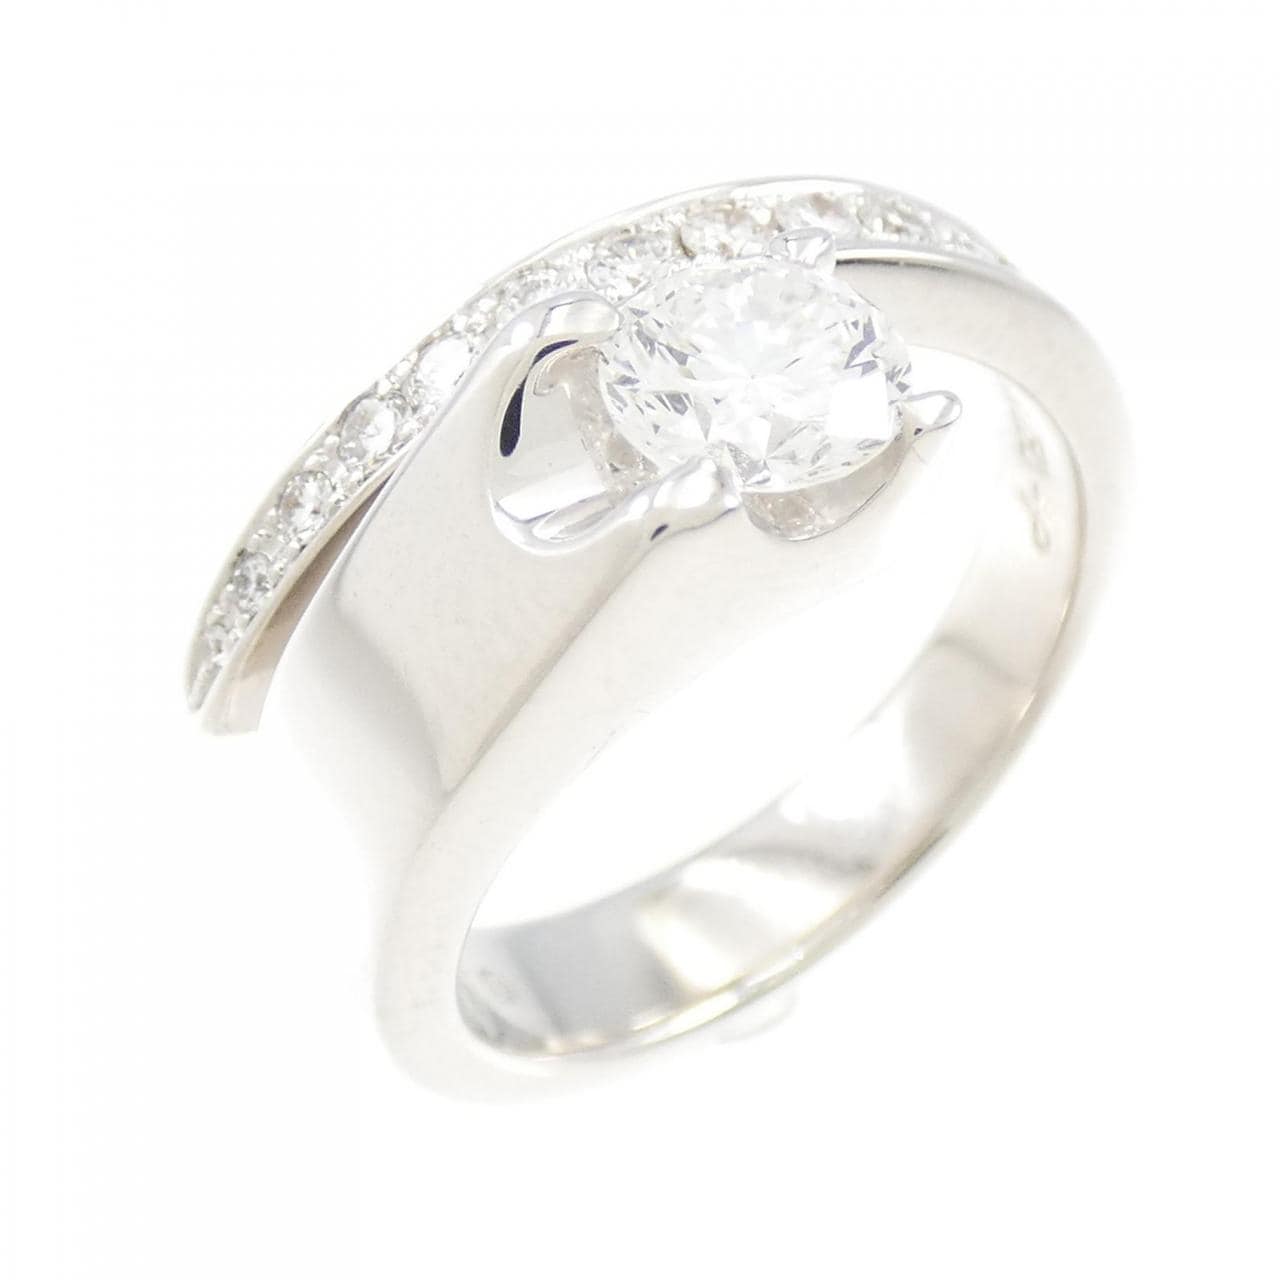 K18WG Diamond Ring 0.563CT F VS1 Good